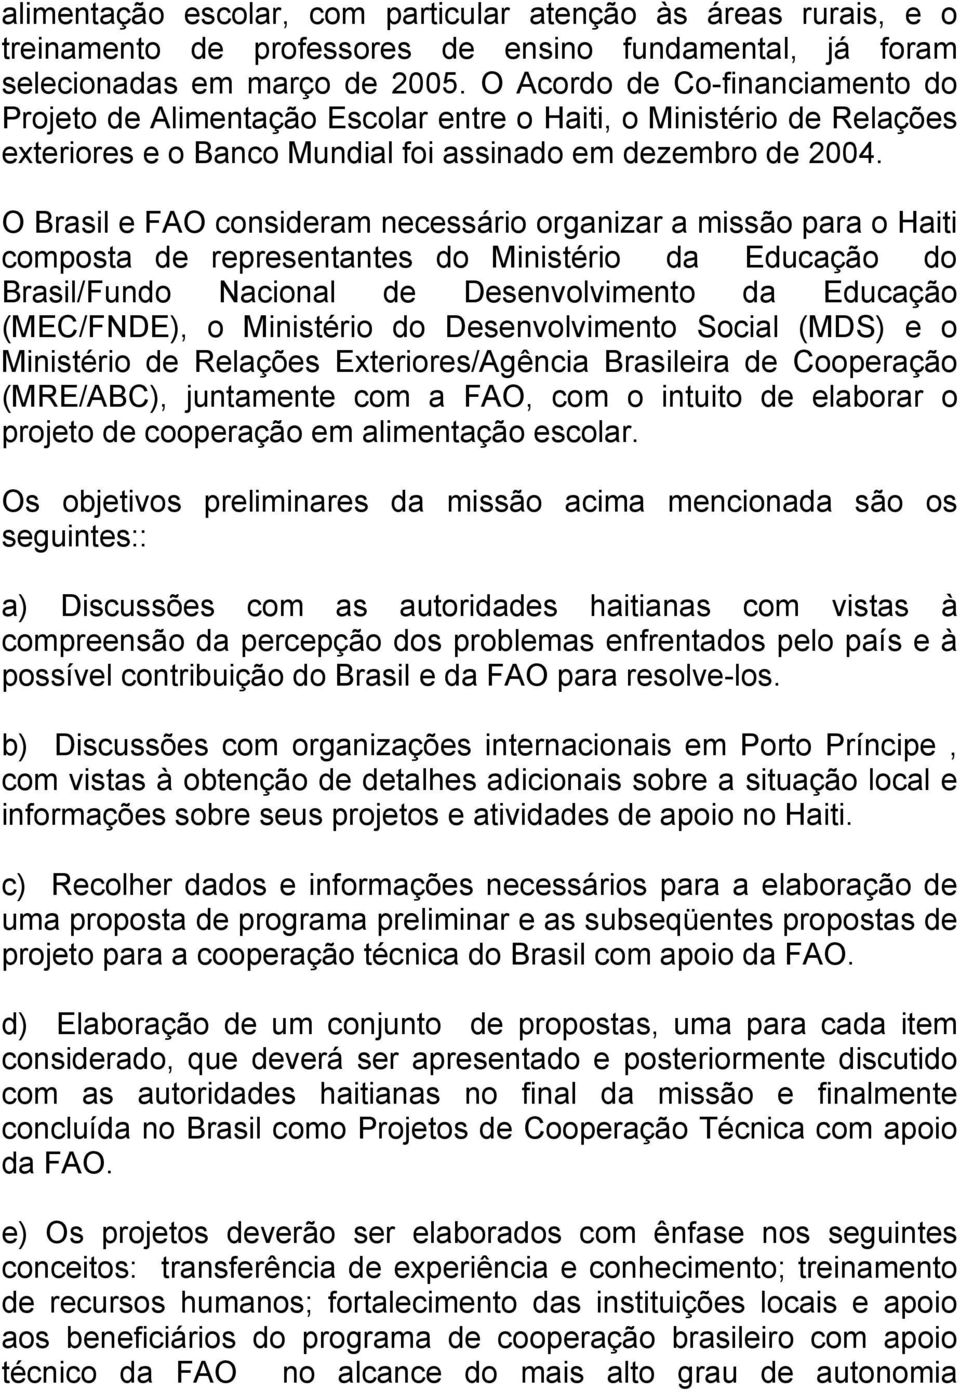 O Brasil e FAO consideram necessário organizar a missão para o Haiti composta de representantes do Ministério da Educação do Brasil/Fundo Nacional de Desenvolvimento da Educação (MEC/FNDE), o